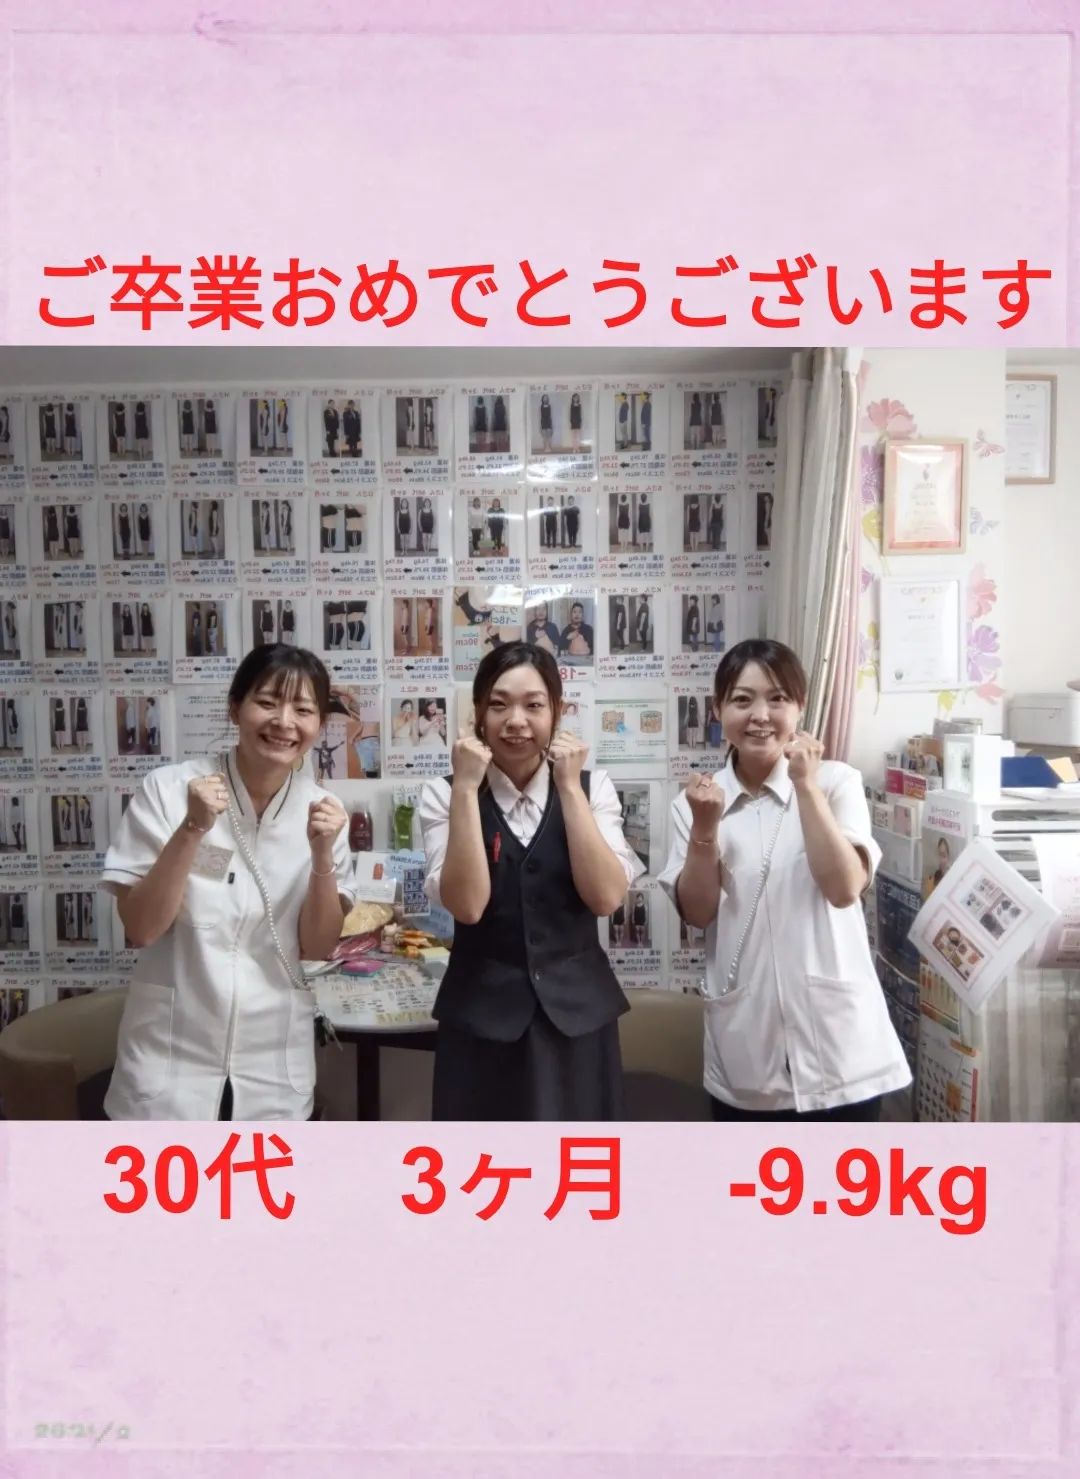 【船橋市】3ヶ月で9.9キロダイエット♪